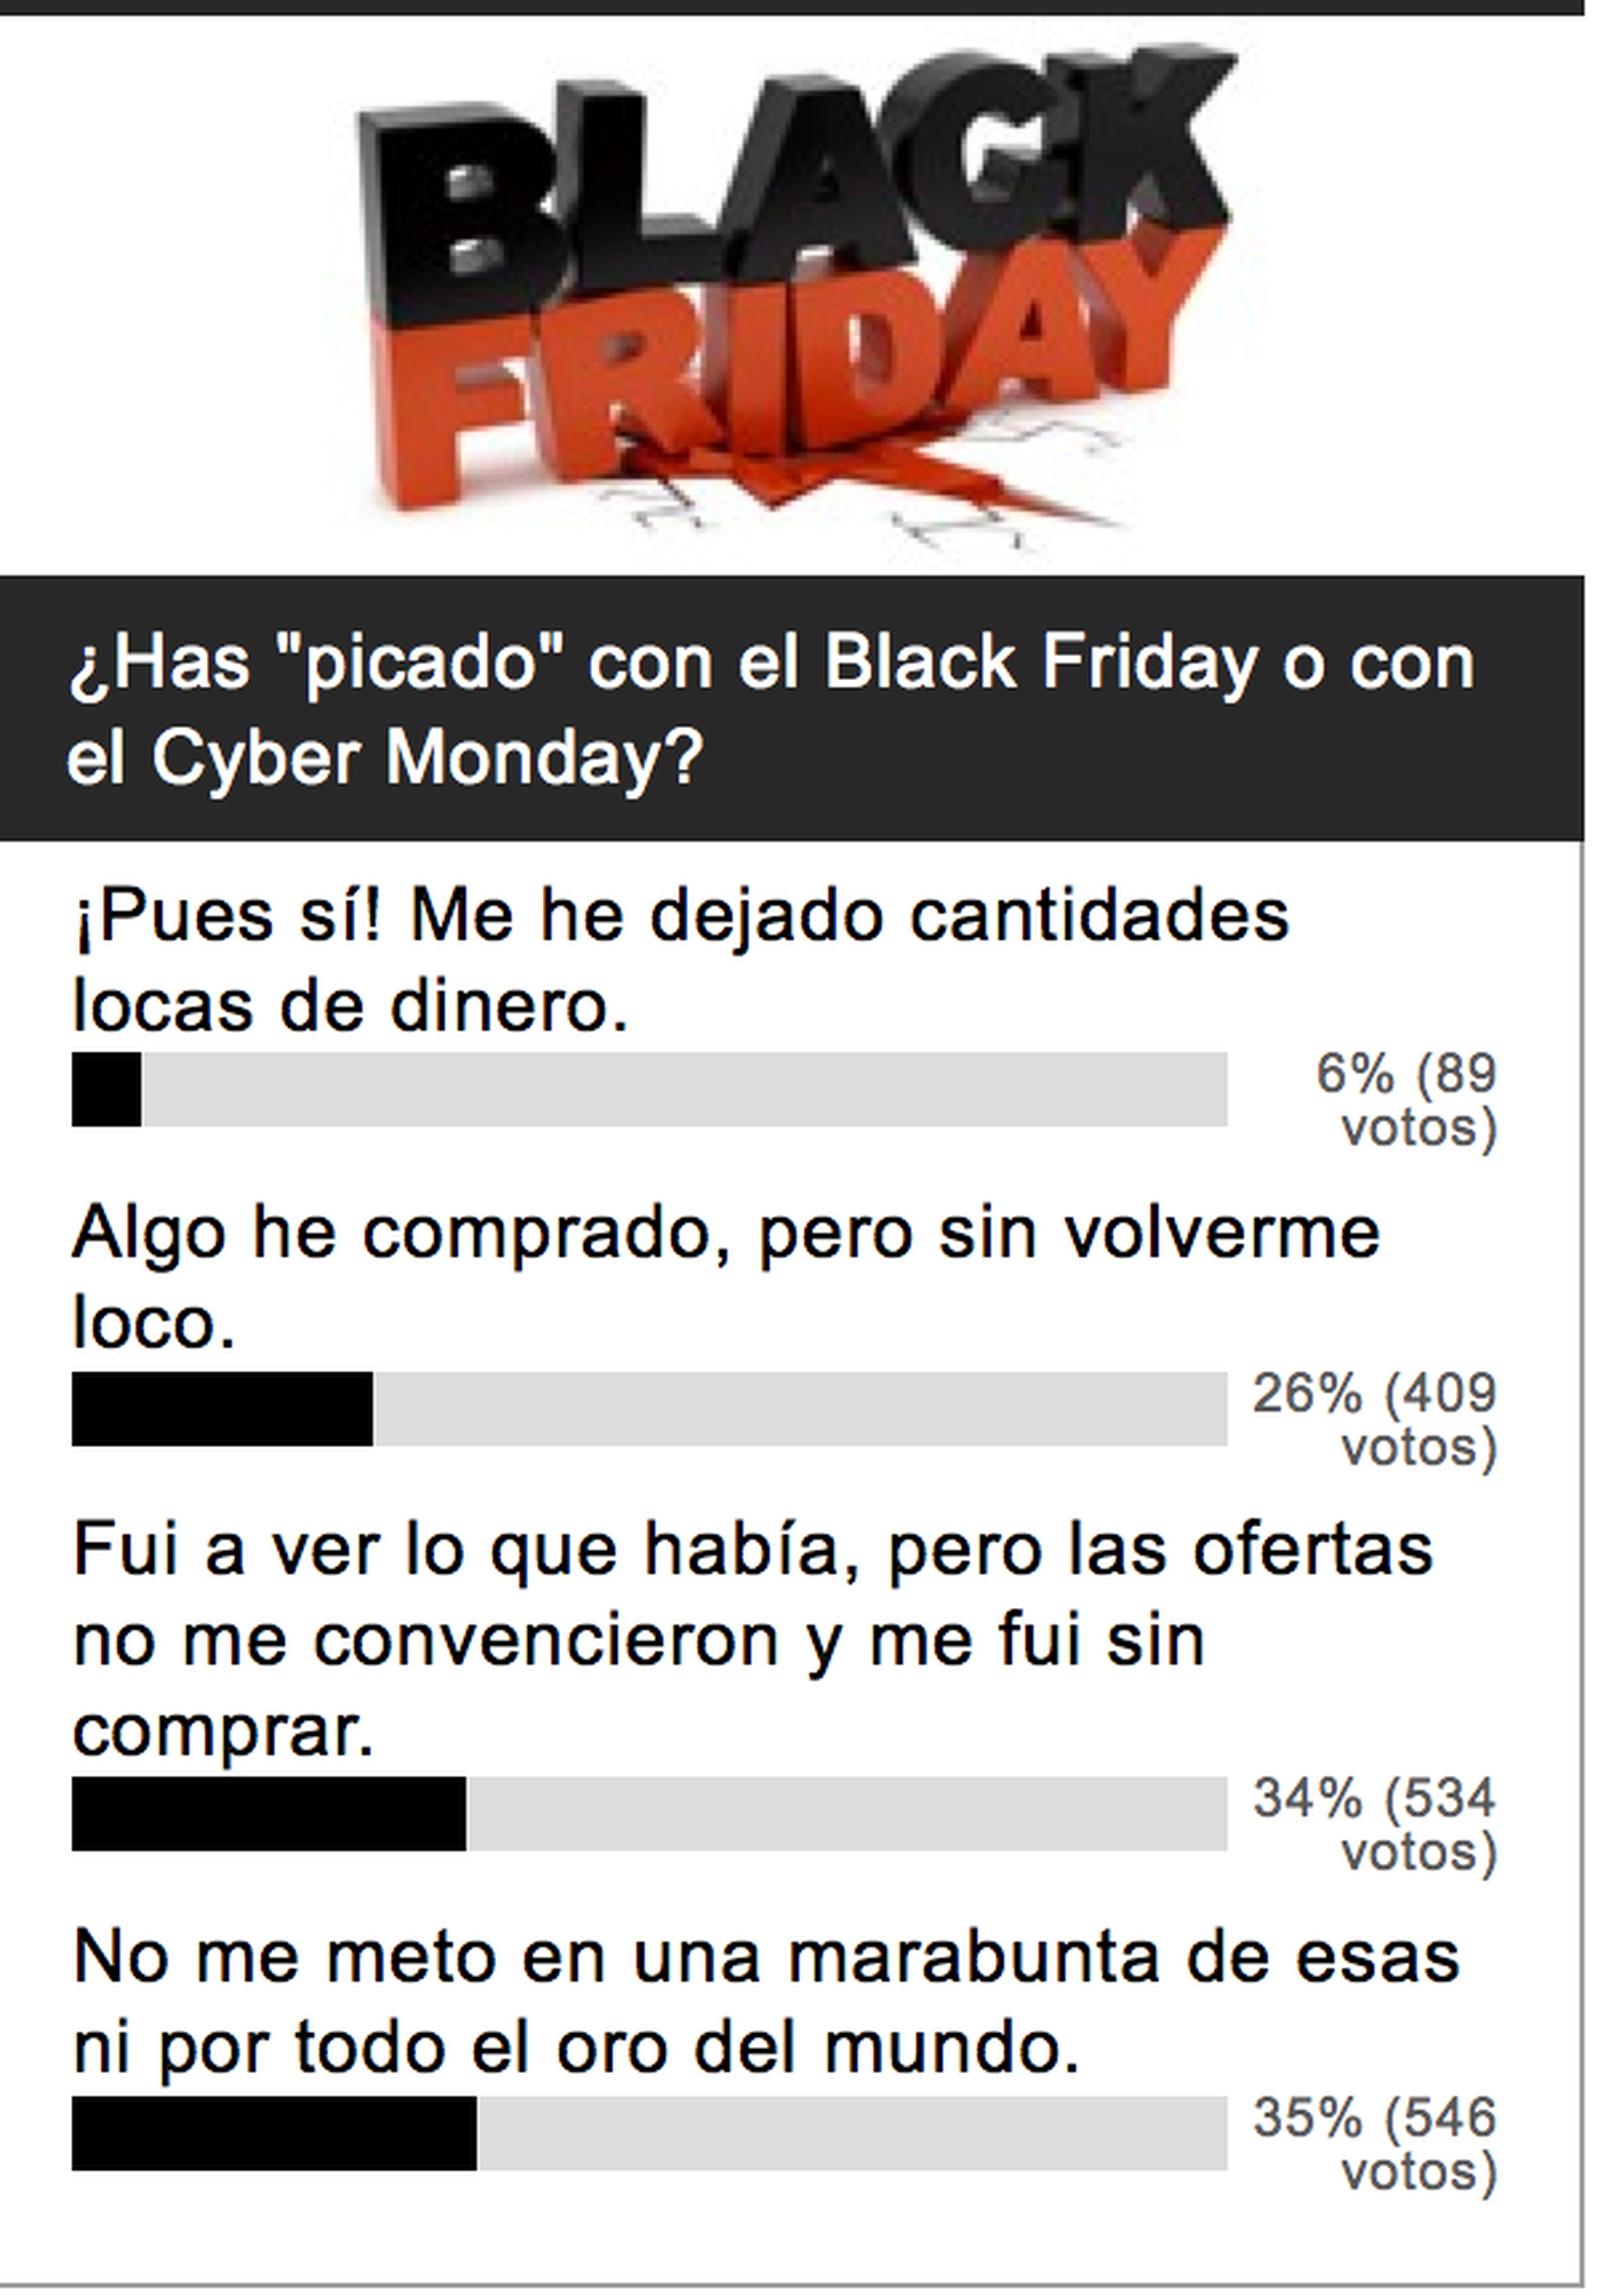 Resultado de encuesta: El Black Friday no os termina de convencer